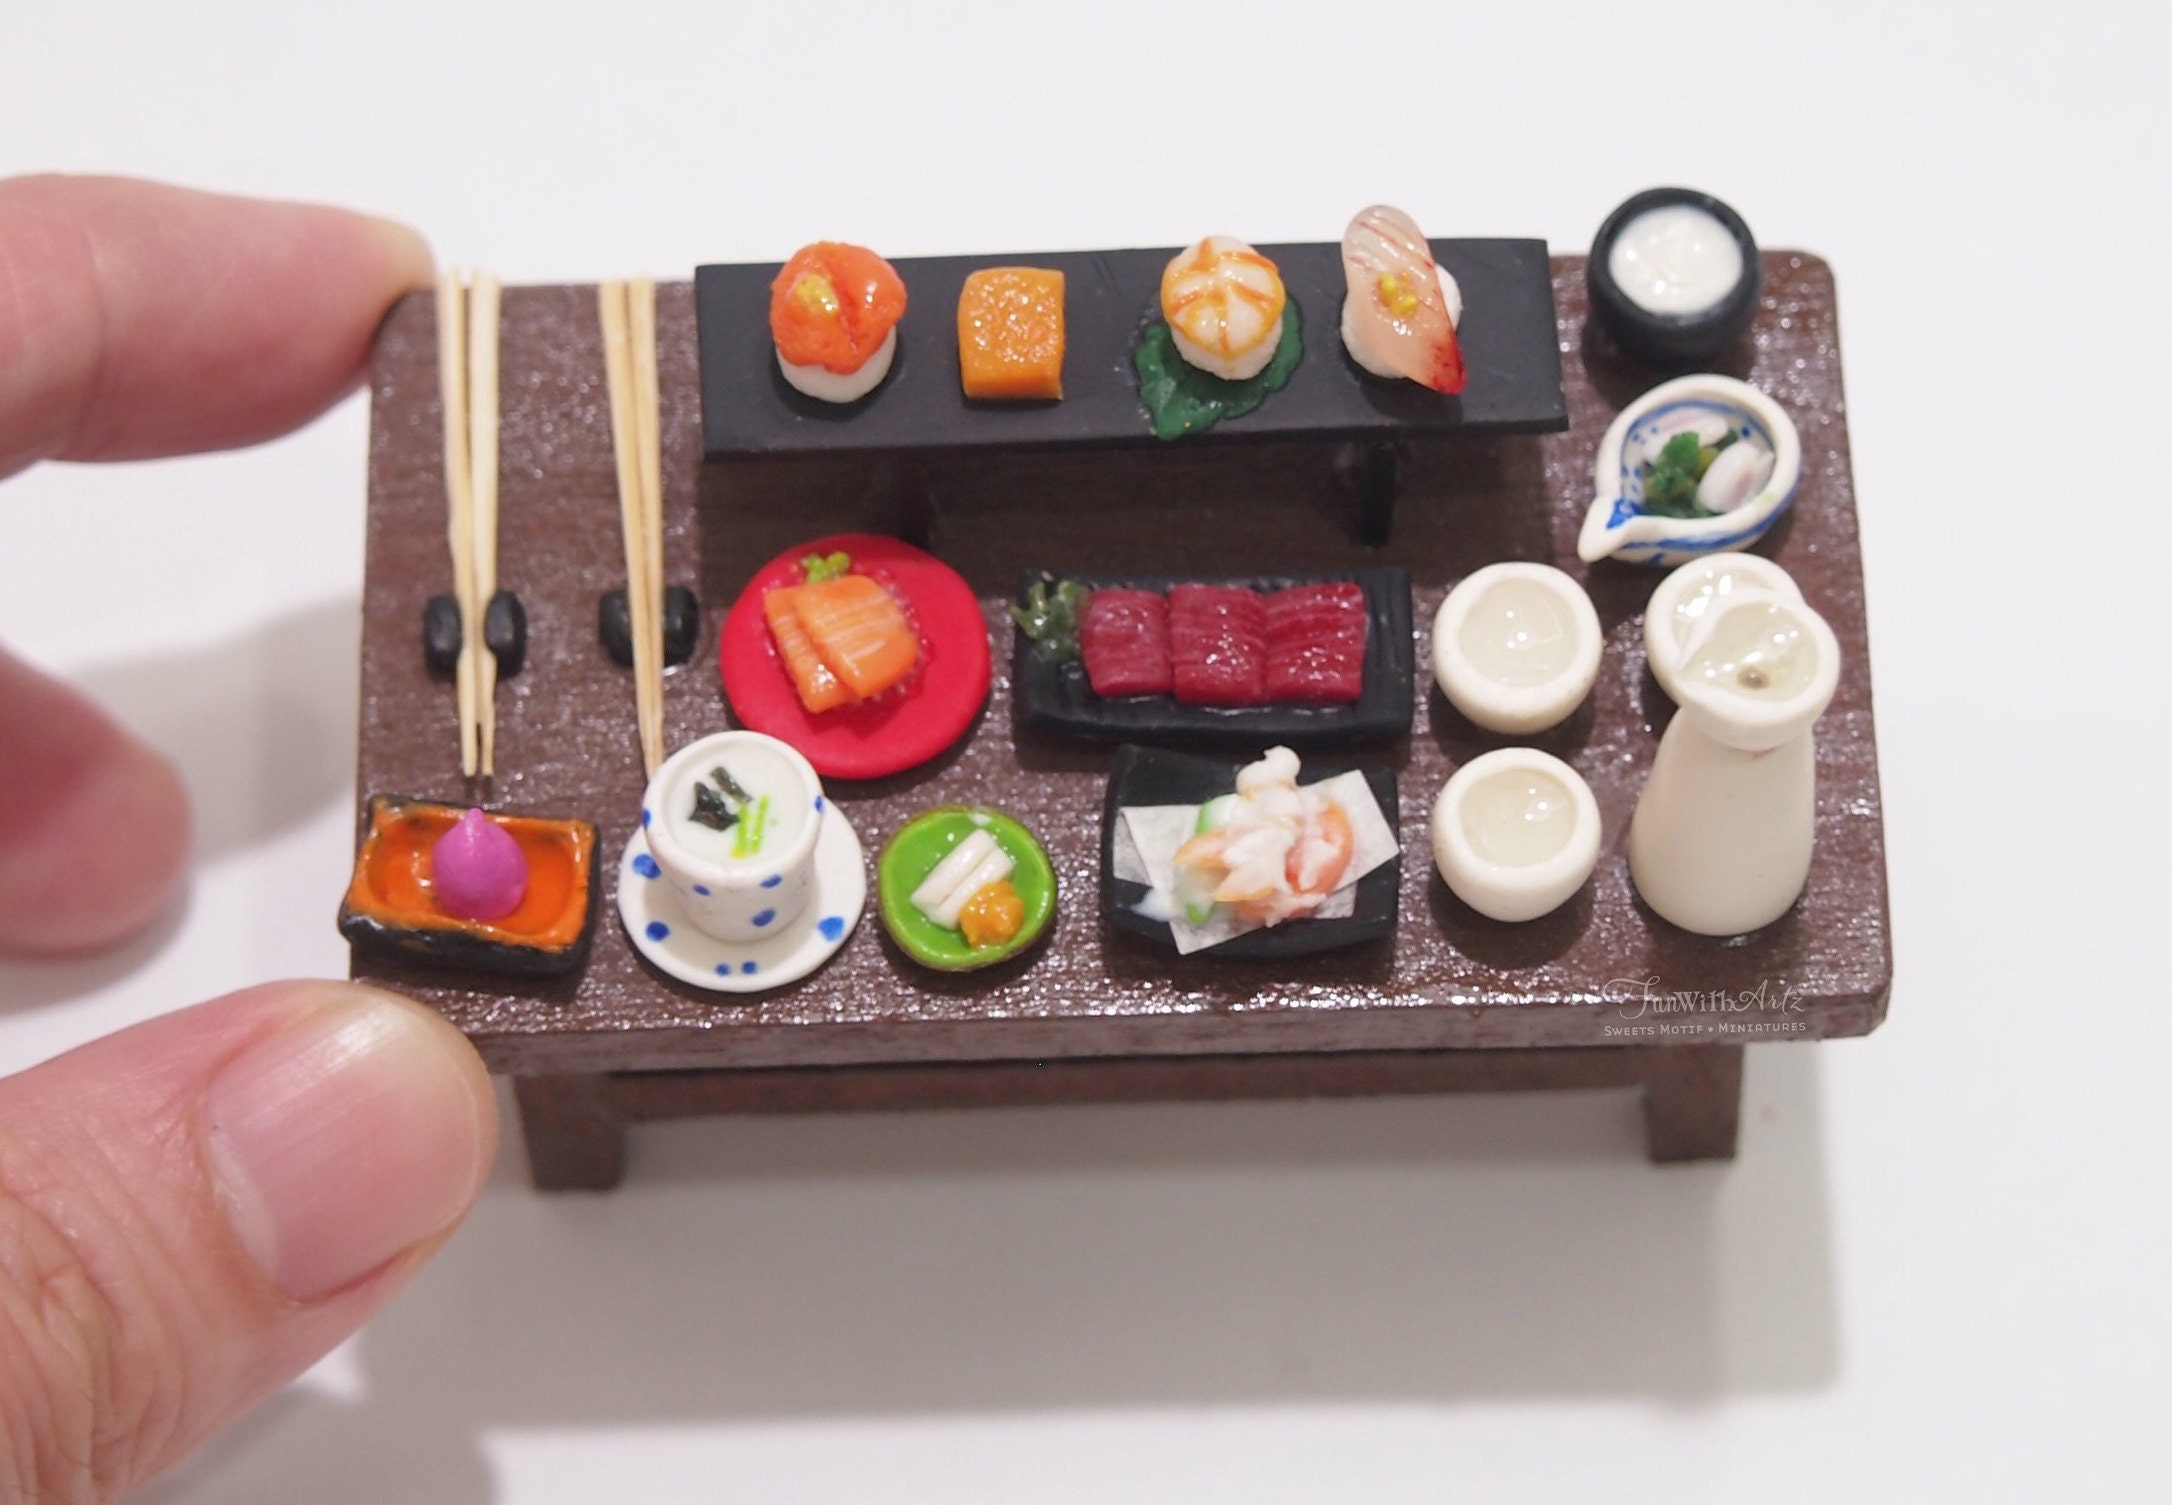 1by 12 Scale Kaiseki Dinner or Miniature Sushi & Maki Platter - Etsy